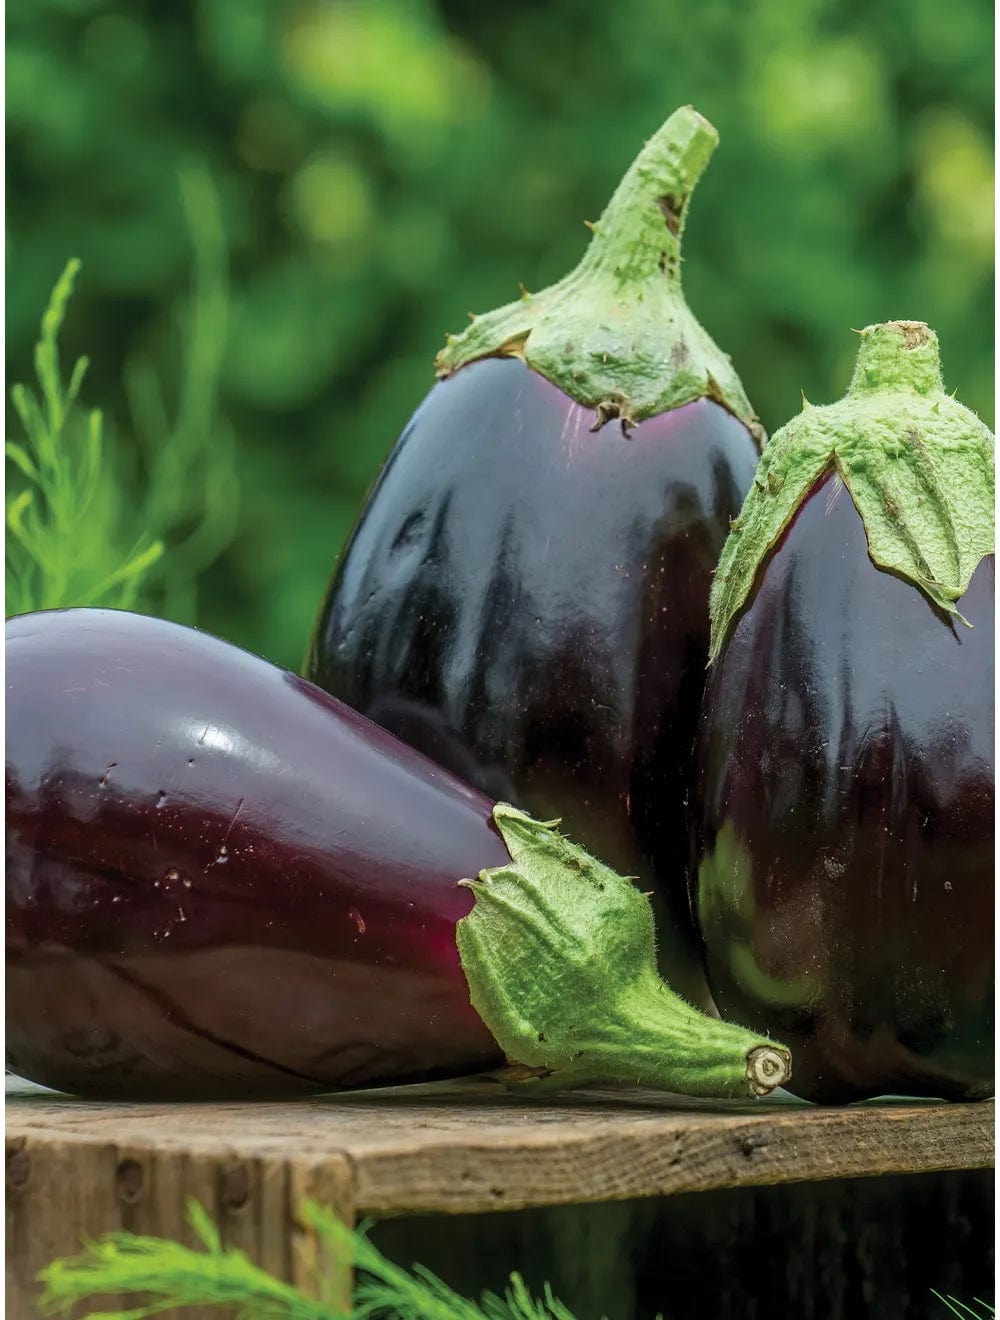 Eggplant Black Beauty - Burpee Seeds